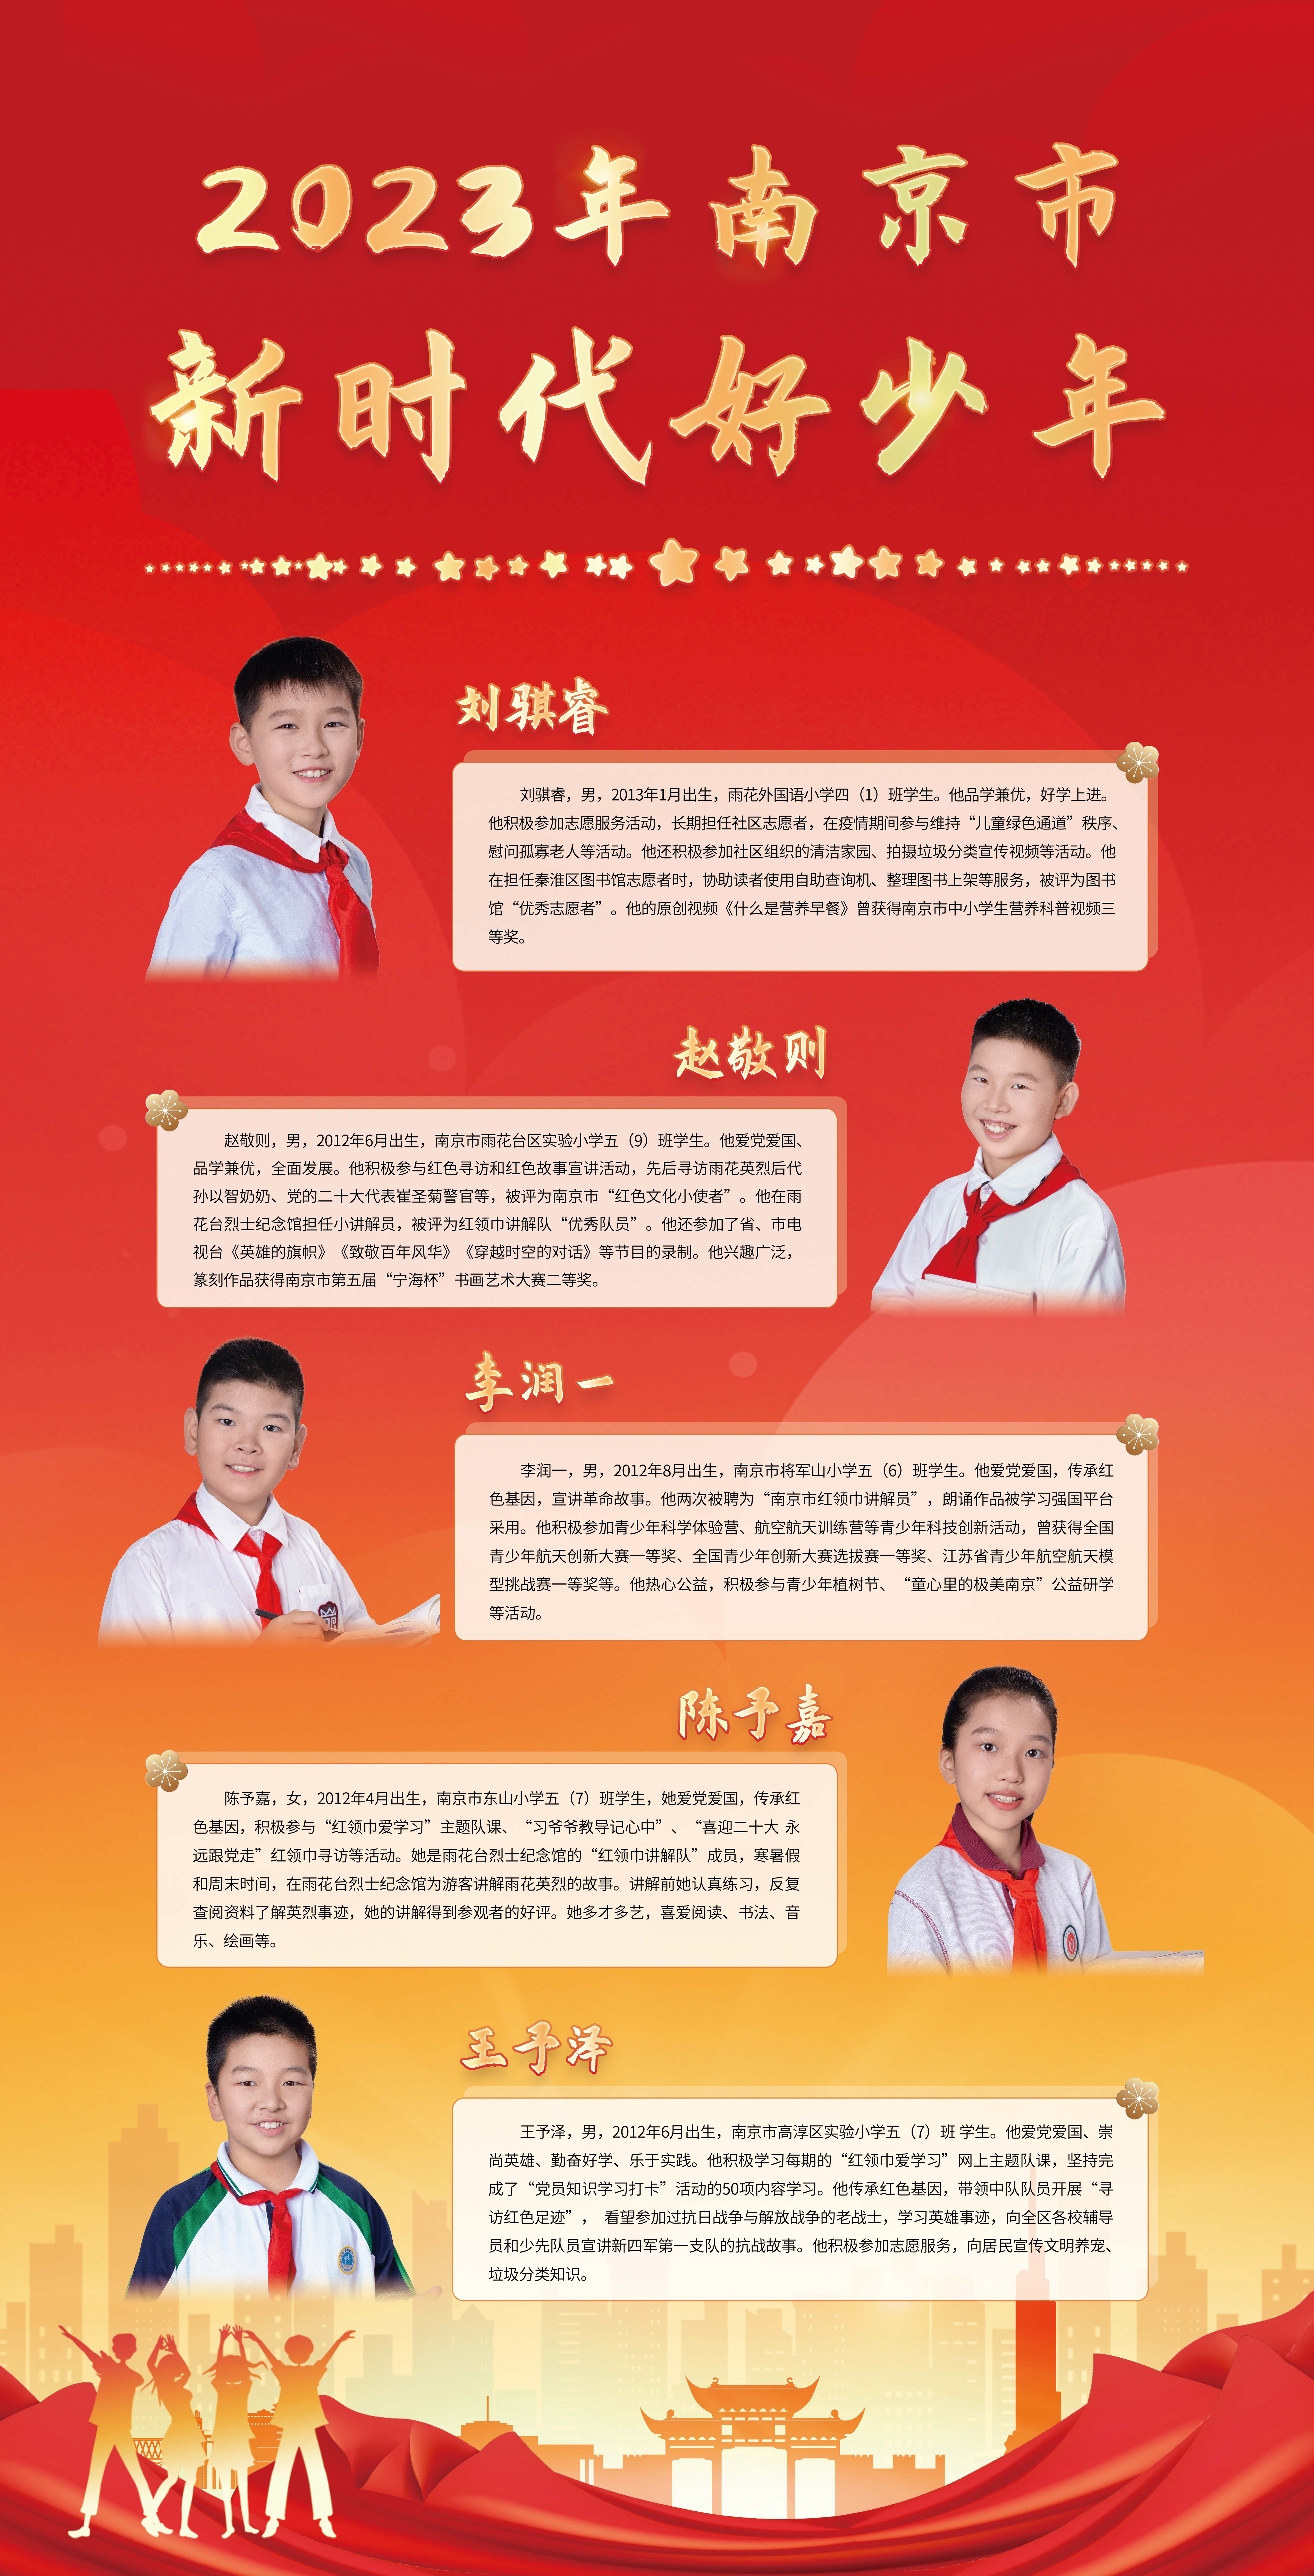 2023-年南京市第一批“新时代好少年”宣传展示图8.jpg